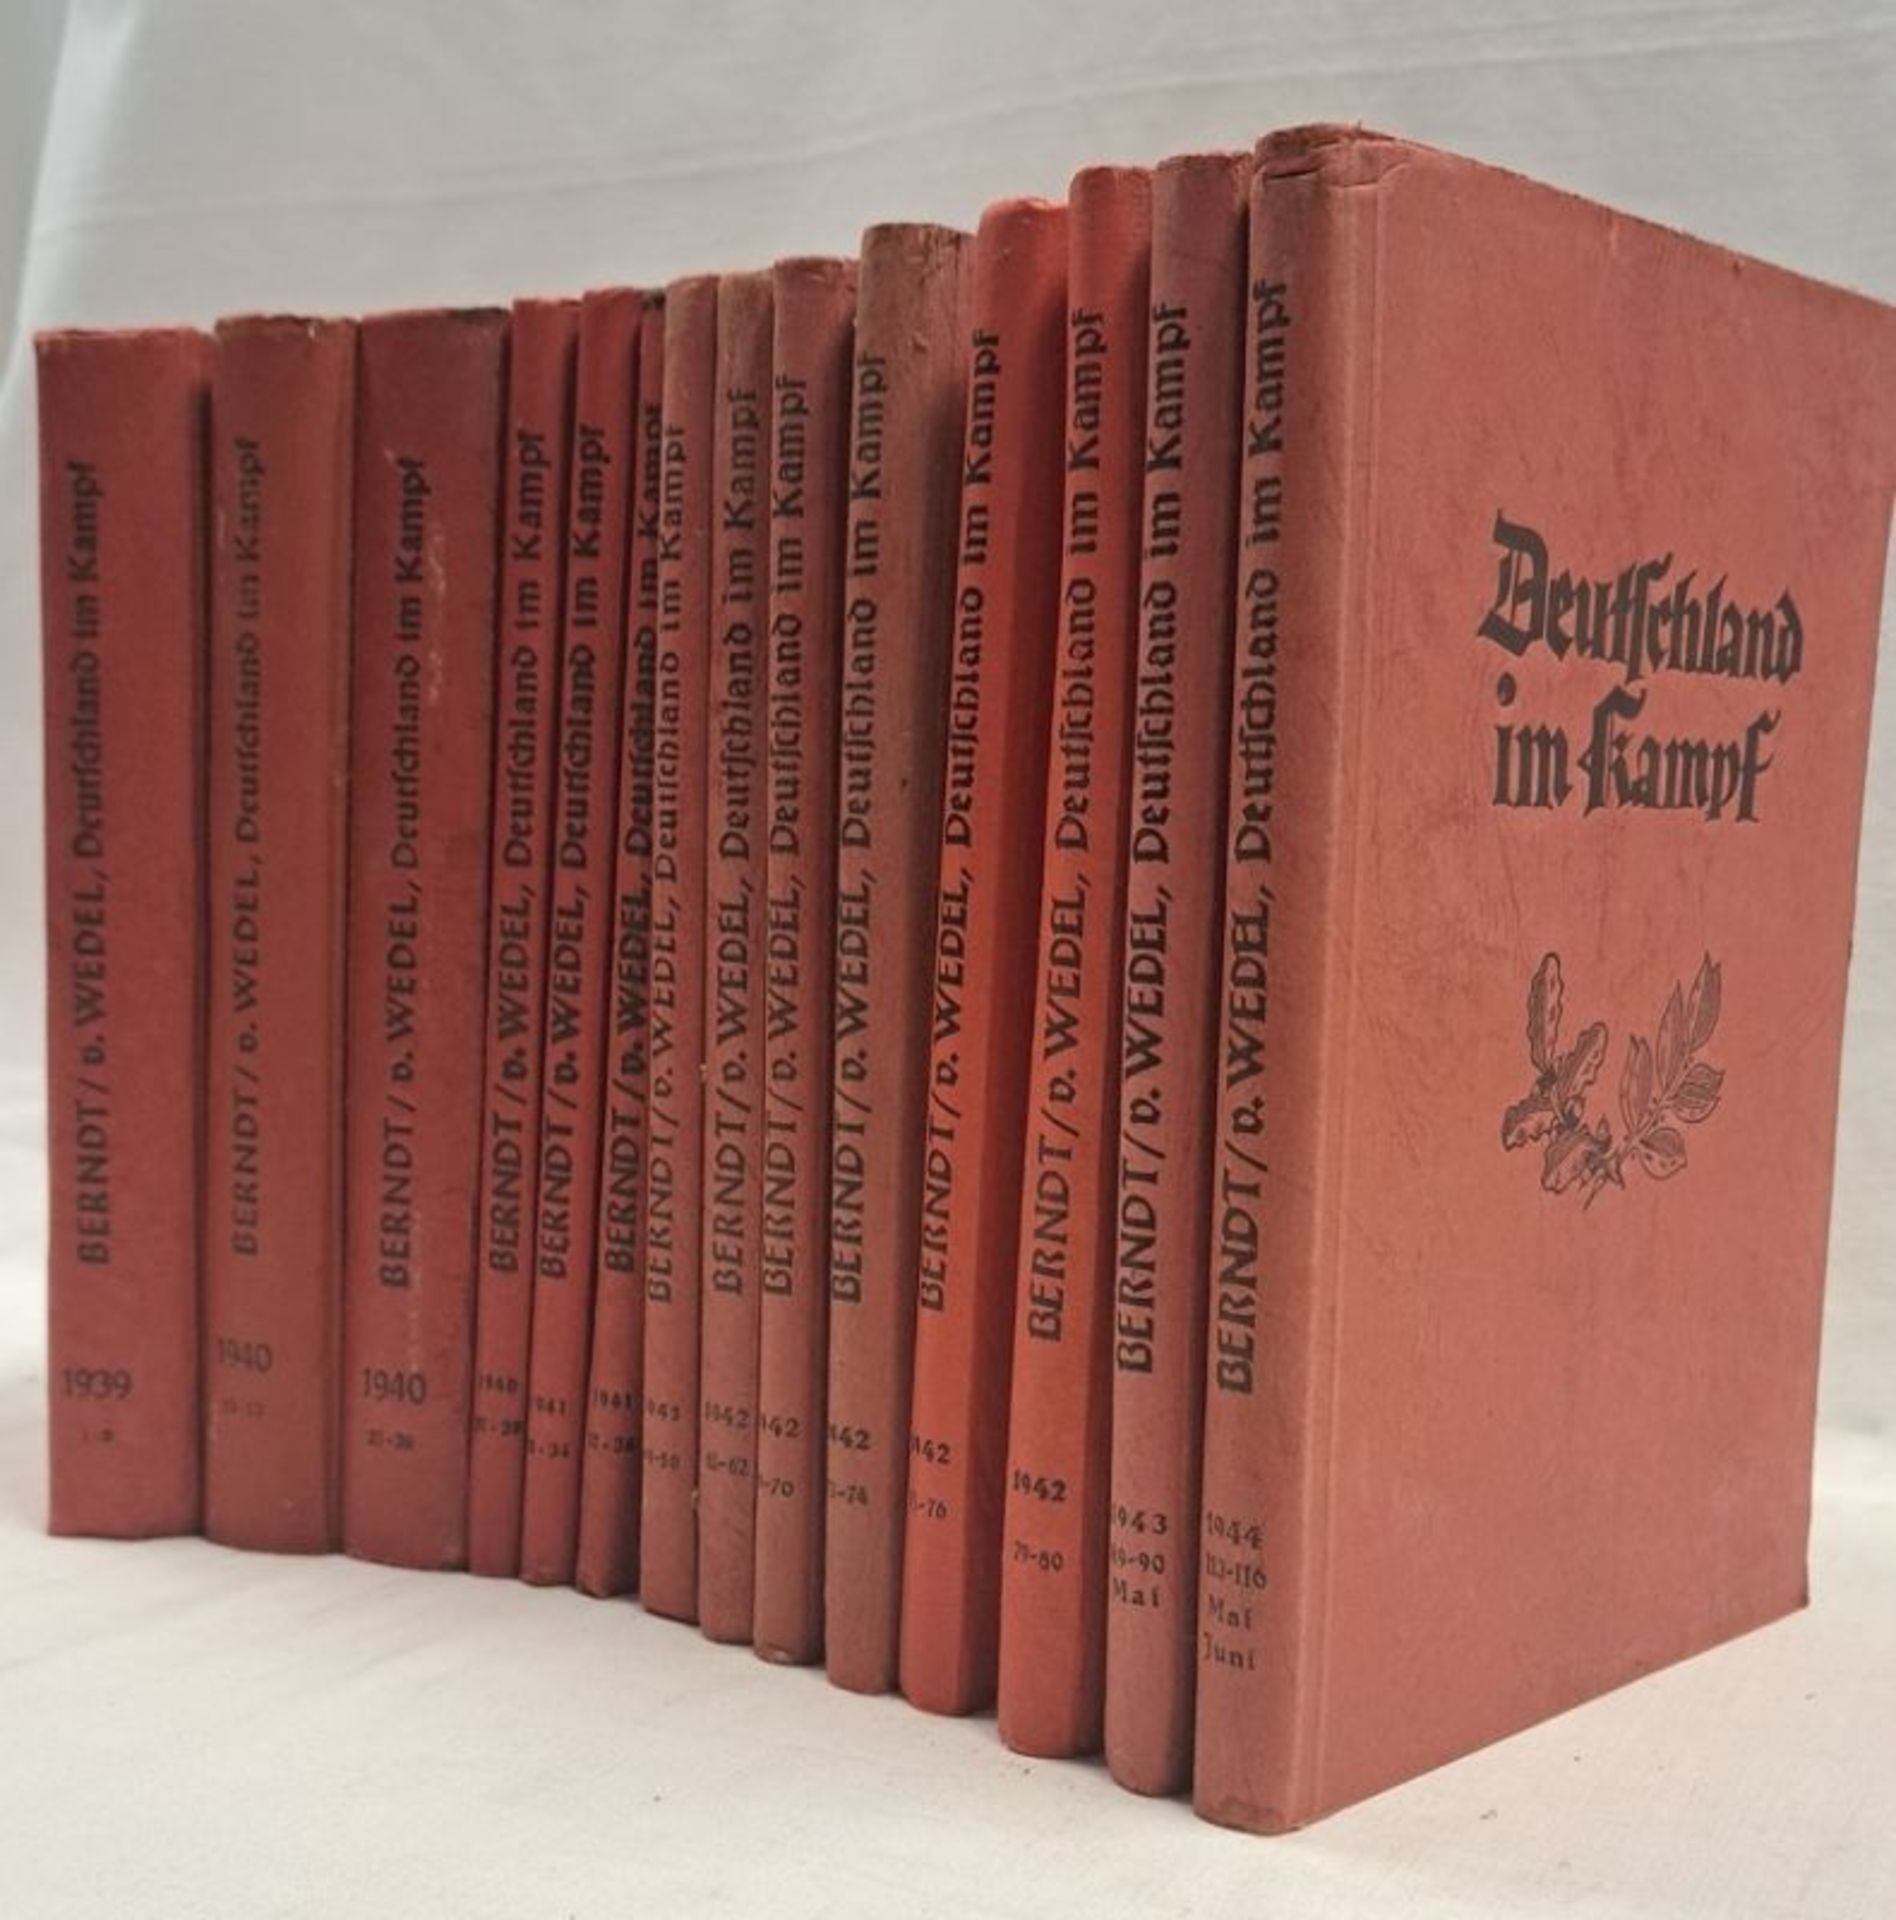 14 Stk. Bücher Deutschland im Kampf - Image 3 of 3